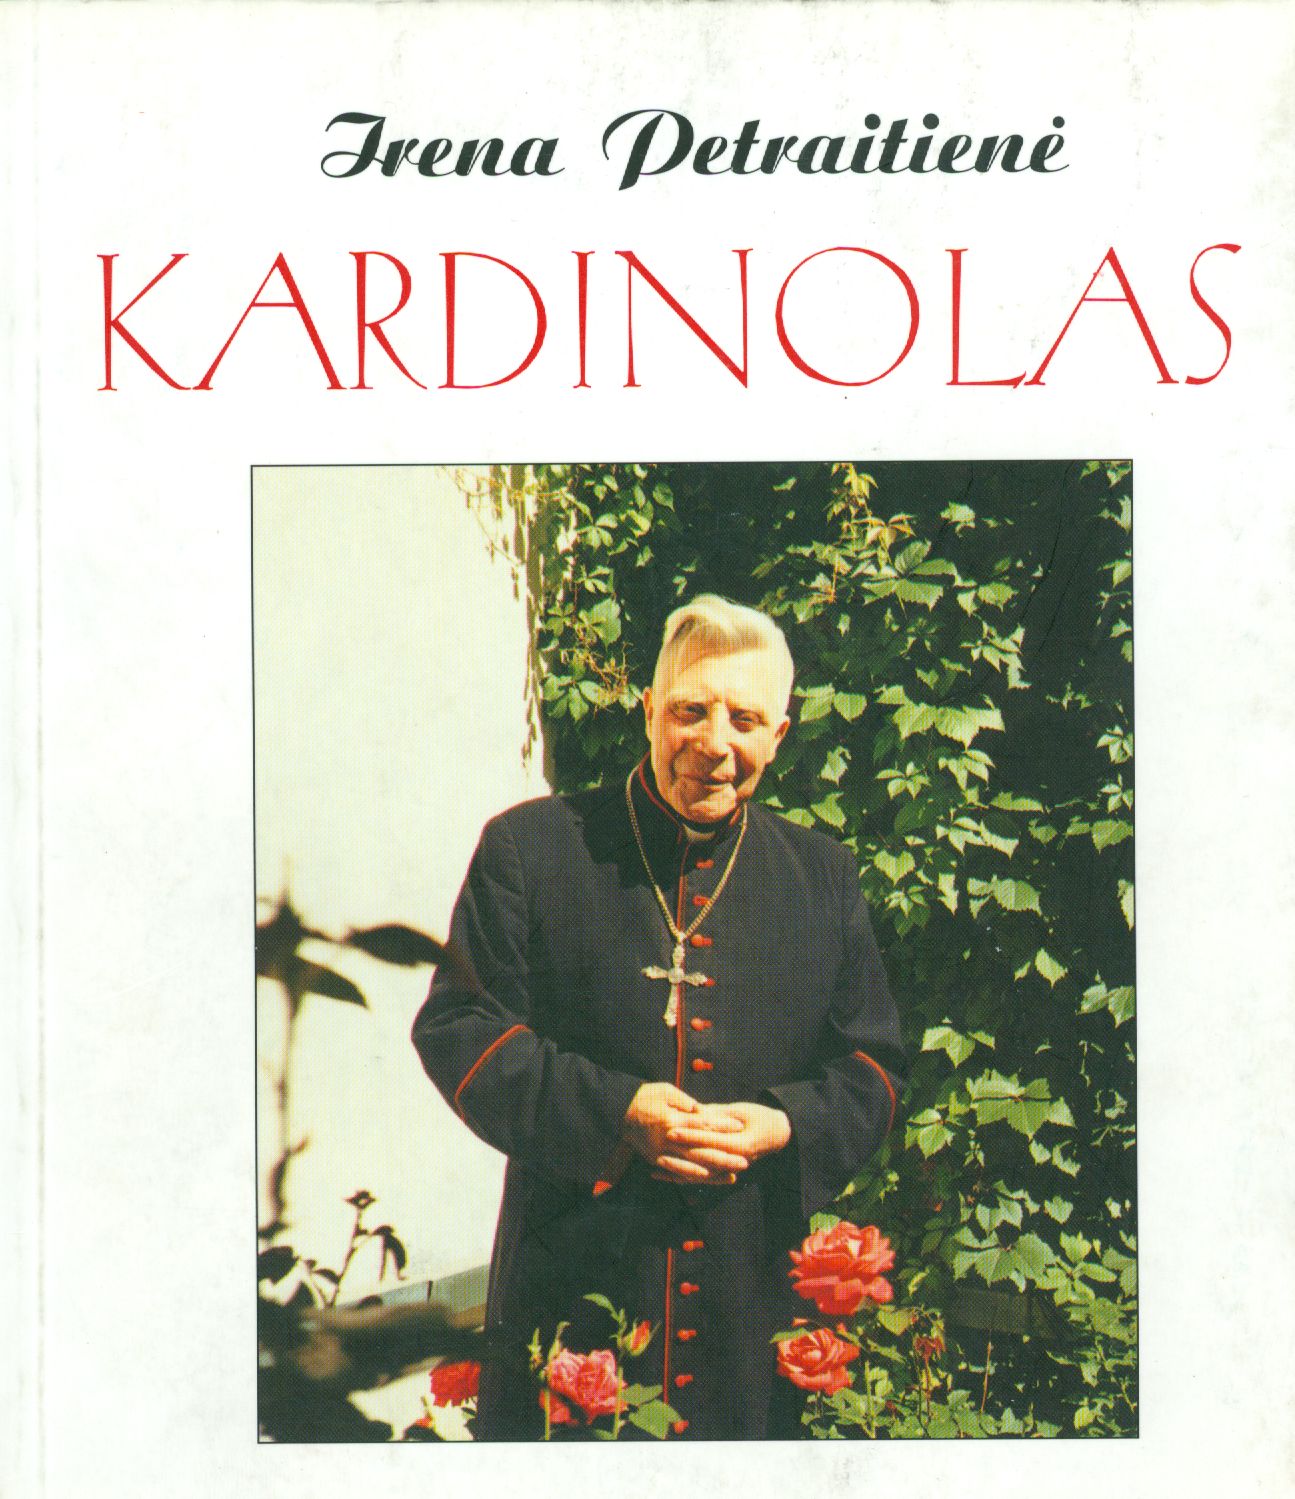 Irenos Petraitienės Kardinolas knygos viršelis